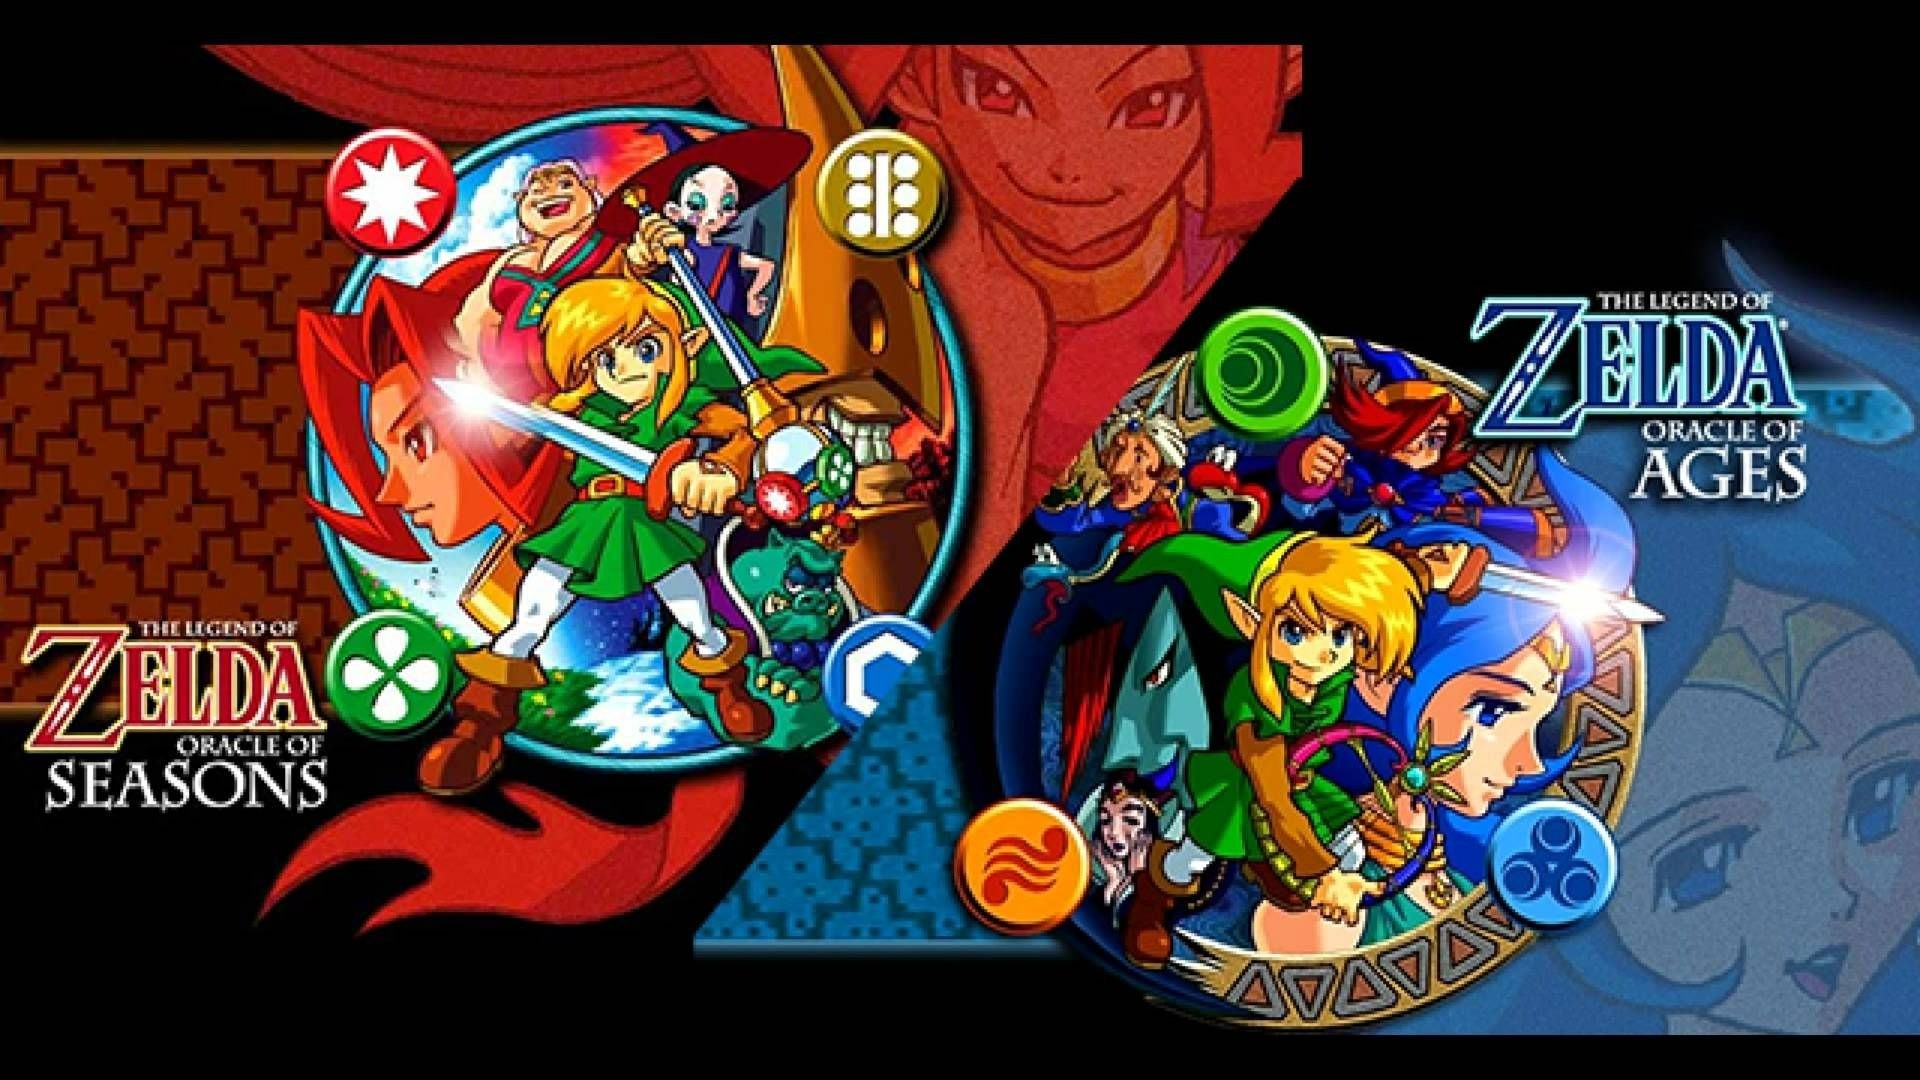 Nintendo Switch Online: serviço ganha dois jogos da franquia Zelda